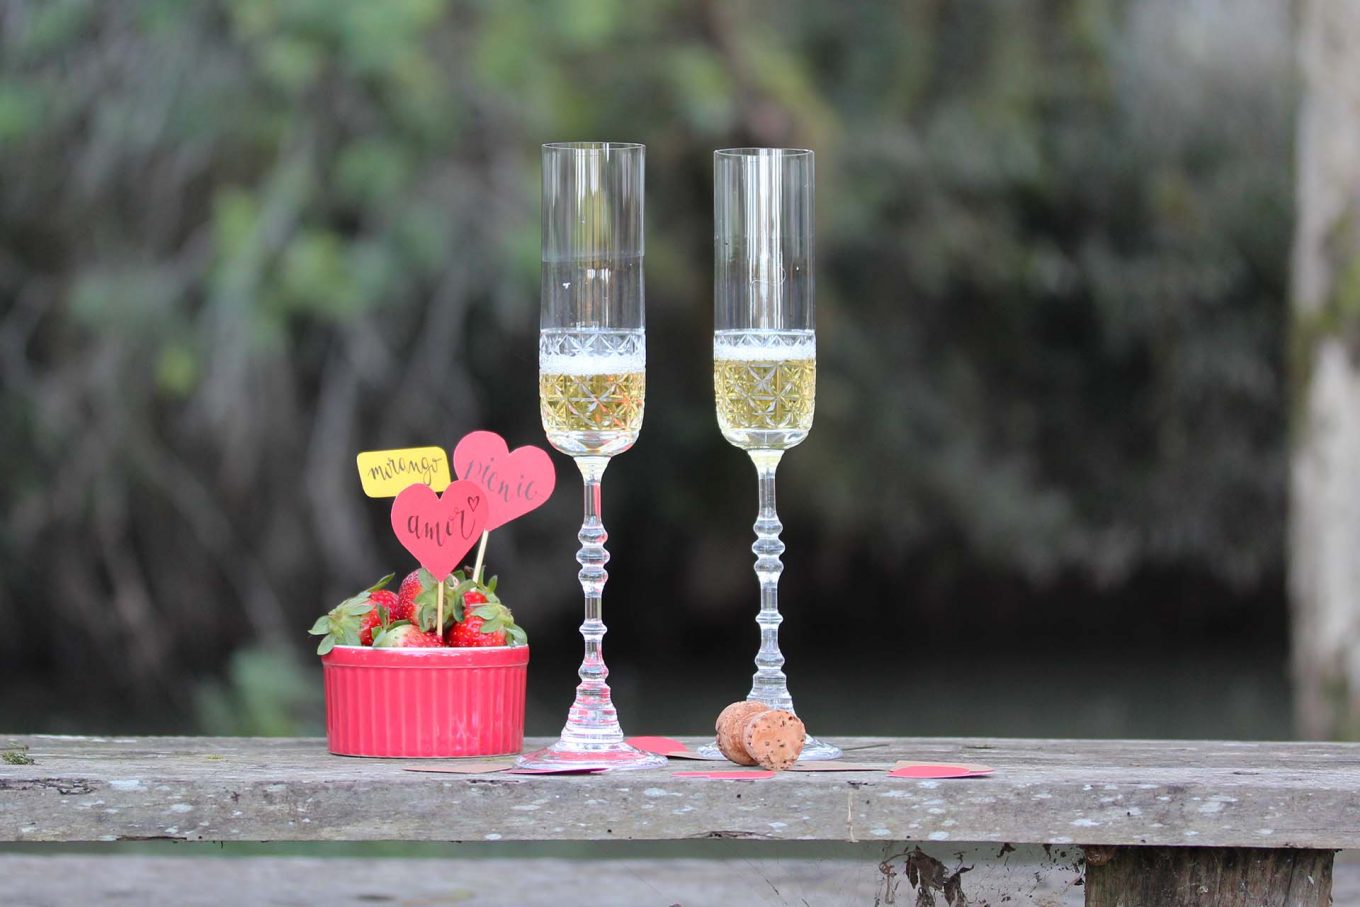 Imagem: Nada mais irresistível que um brinde com espumante ou champagne e taças lindas como as da coleção Cidade da Garoa, da Oxford Crystal. Foto: Equipe Oxford.